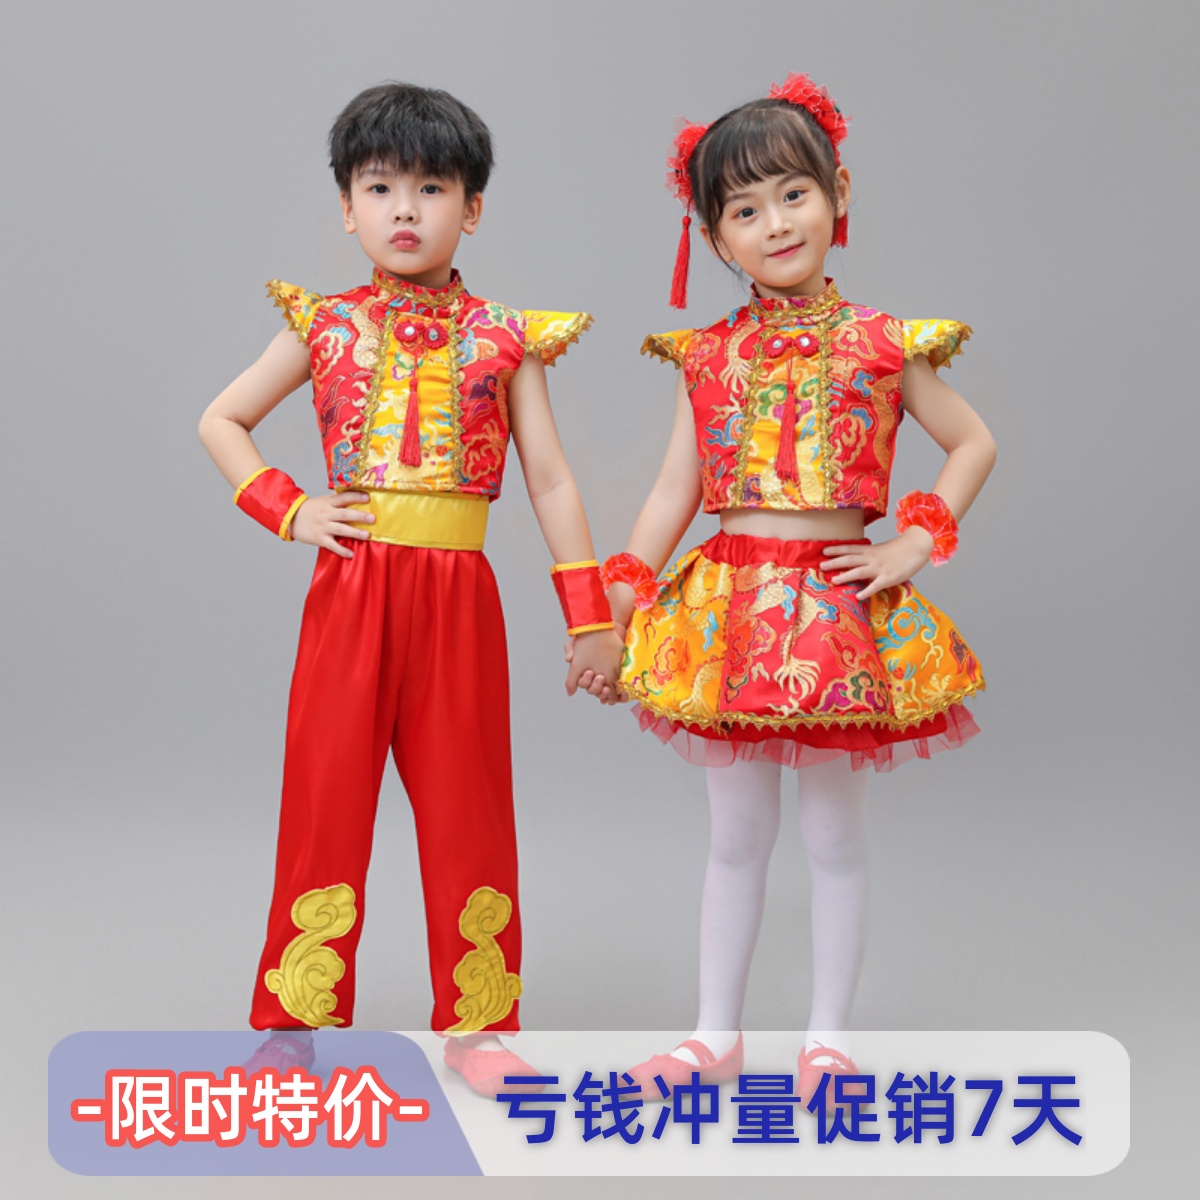 六一儿童打鼓表演服中国开门红幼儿说唱梦娃喜庆太平女儿鼓演出服